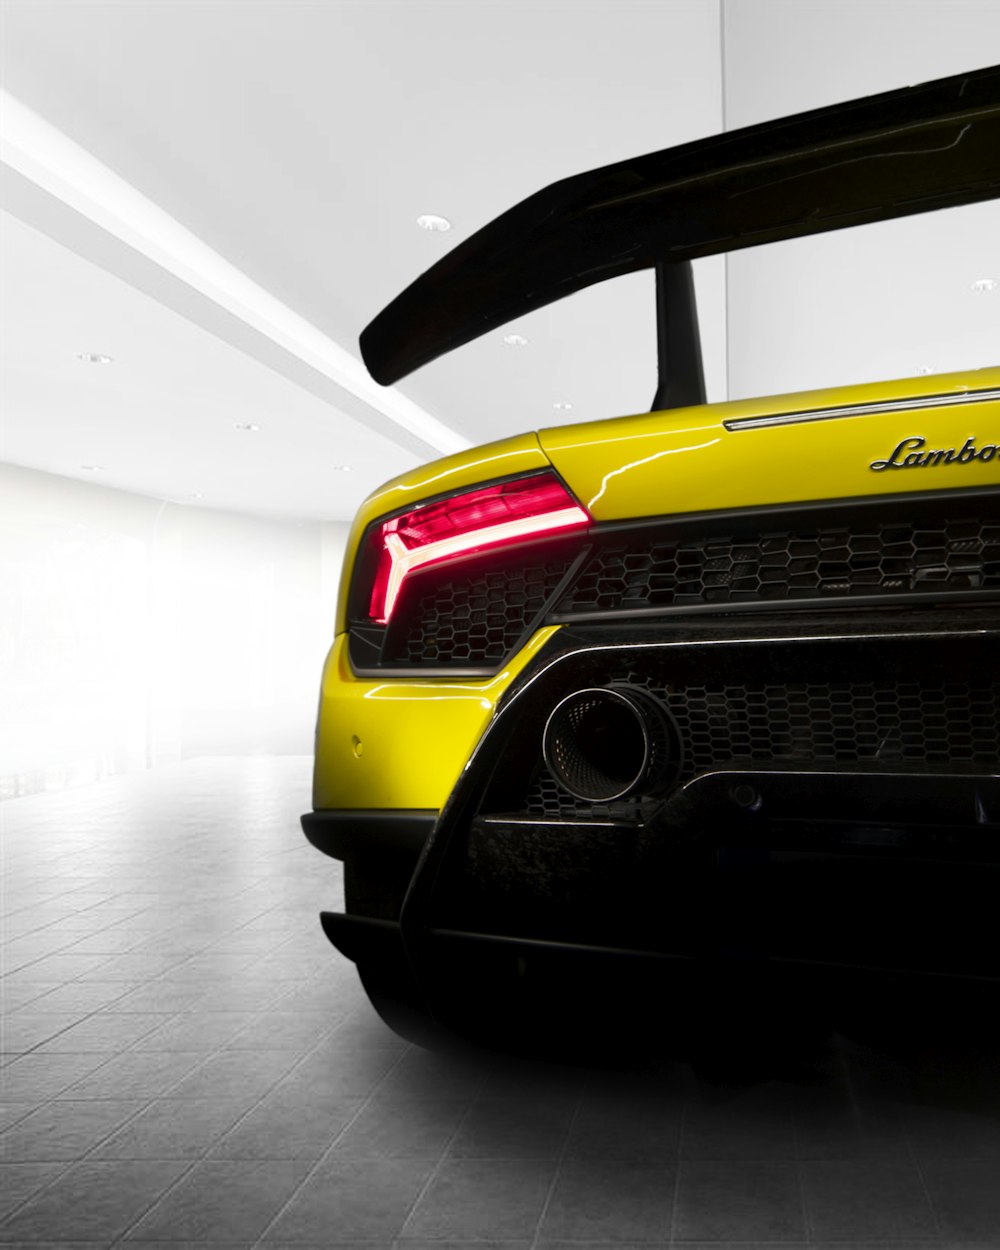 Captura de pantalla del vehículo Lamborghini amarillo y negro